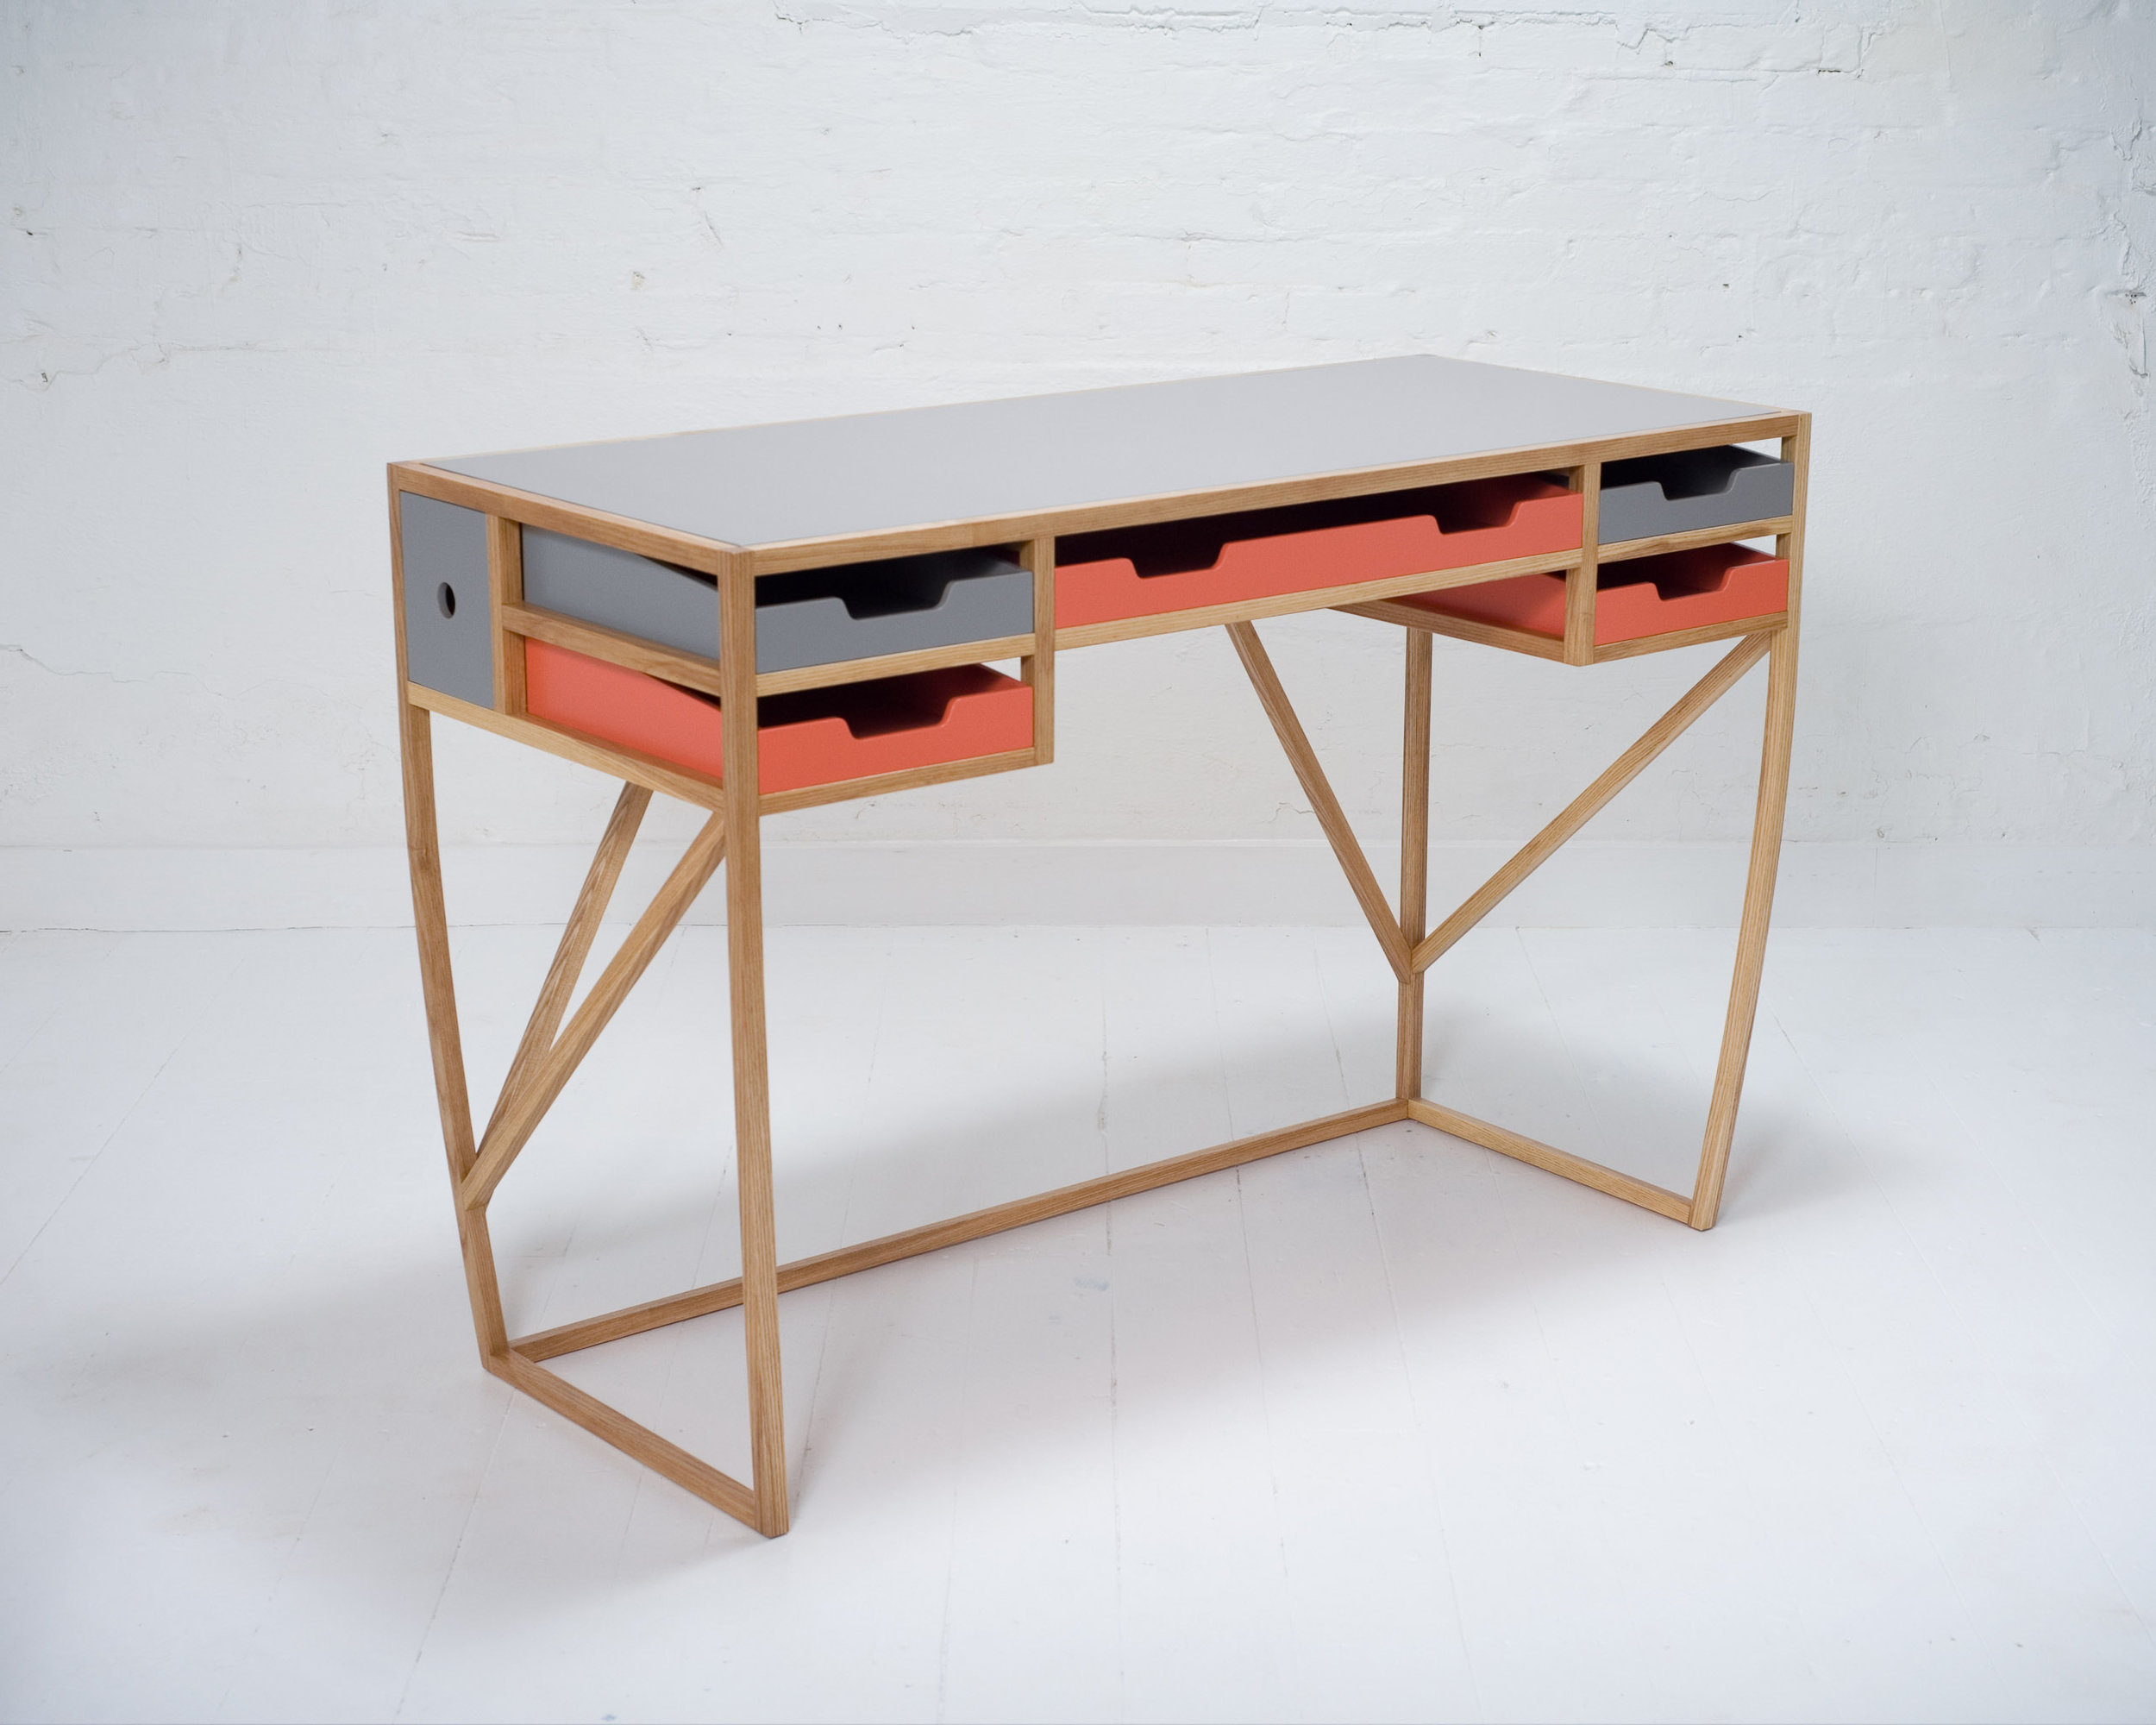 Client: Tim Lewis Furniture Design